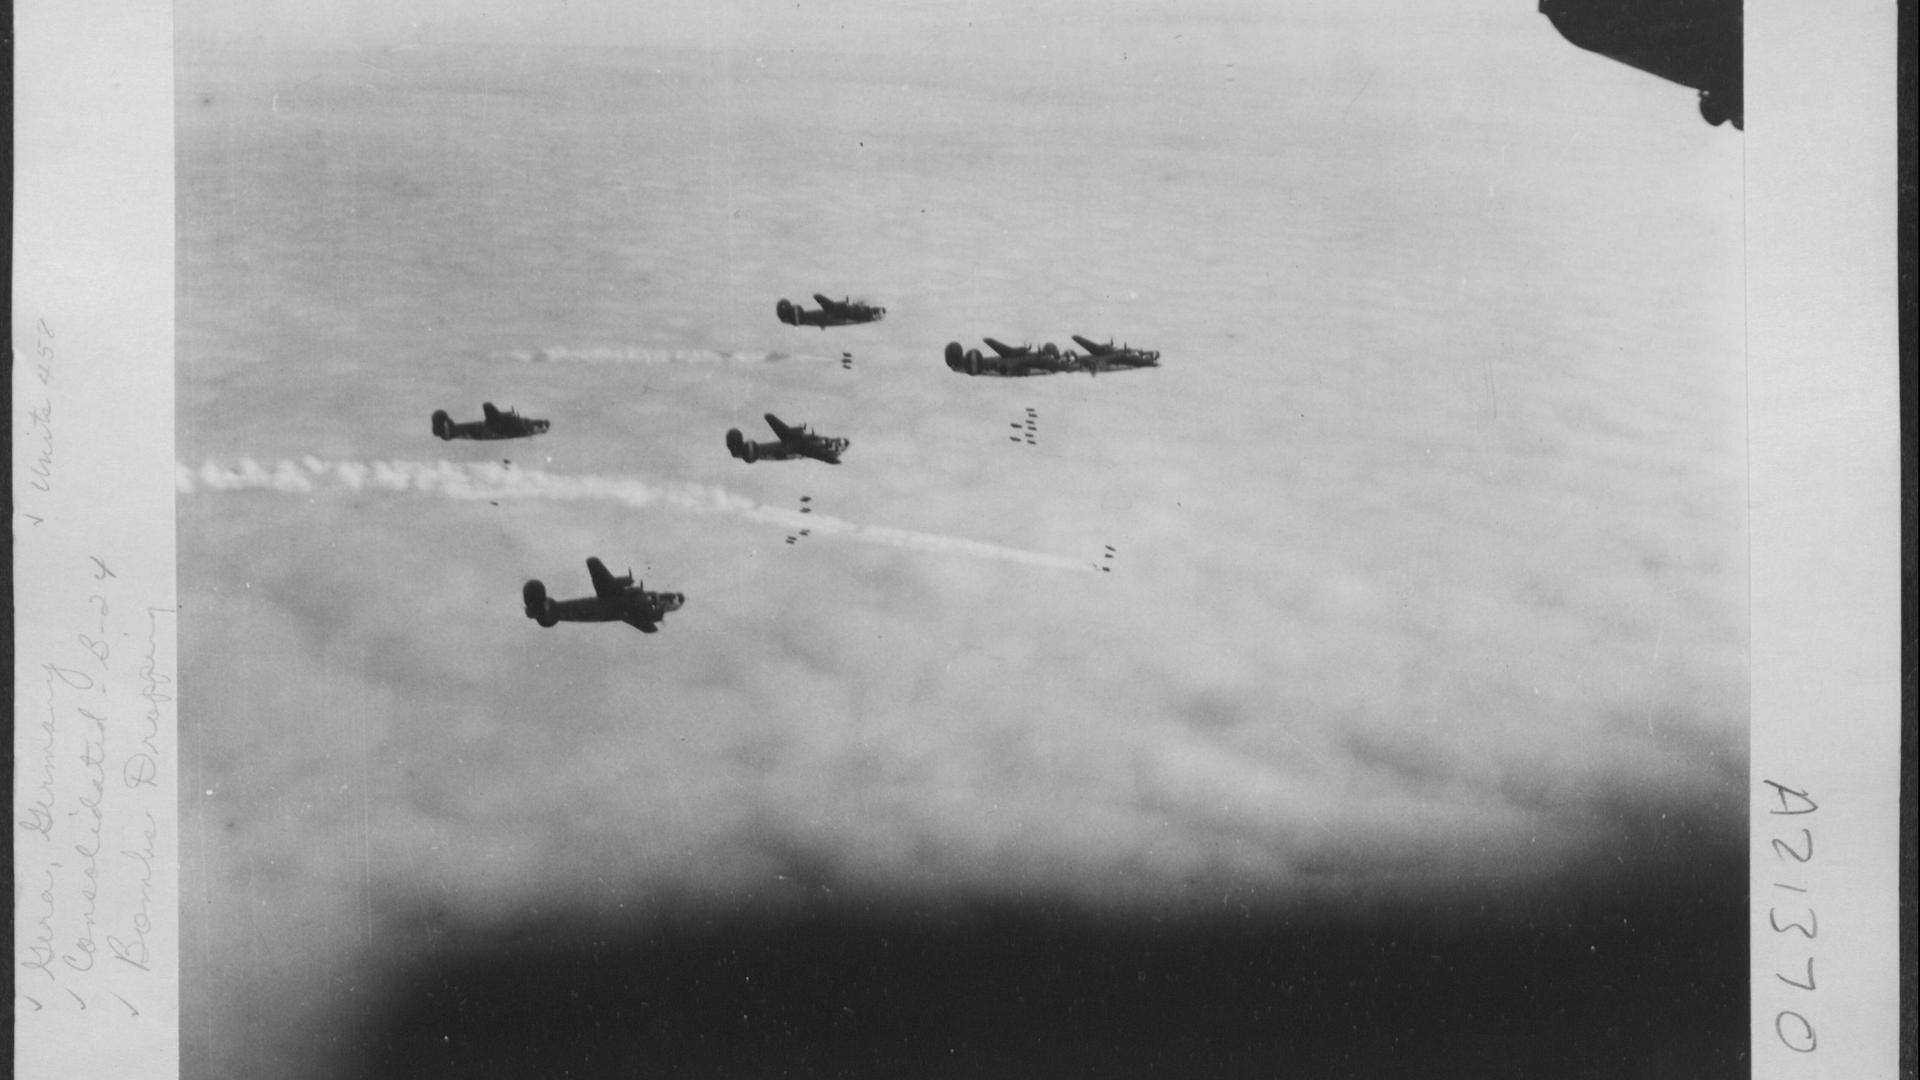 Schwarz-weiß-Aufnahme einer Formation von B-24-Fliegern des US-Herstellers Consolidated Aircraft über der thüringischen Stadt Gera. Geschätztes Datum: 23. Februar 1945